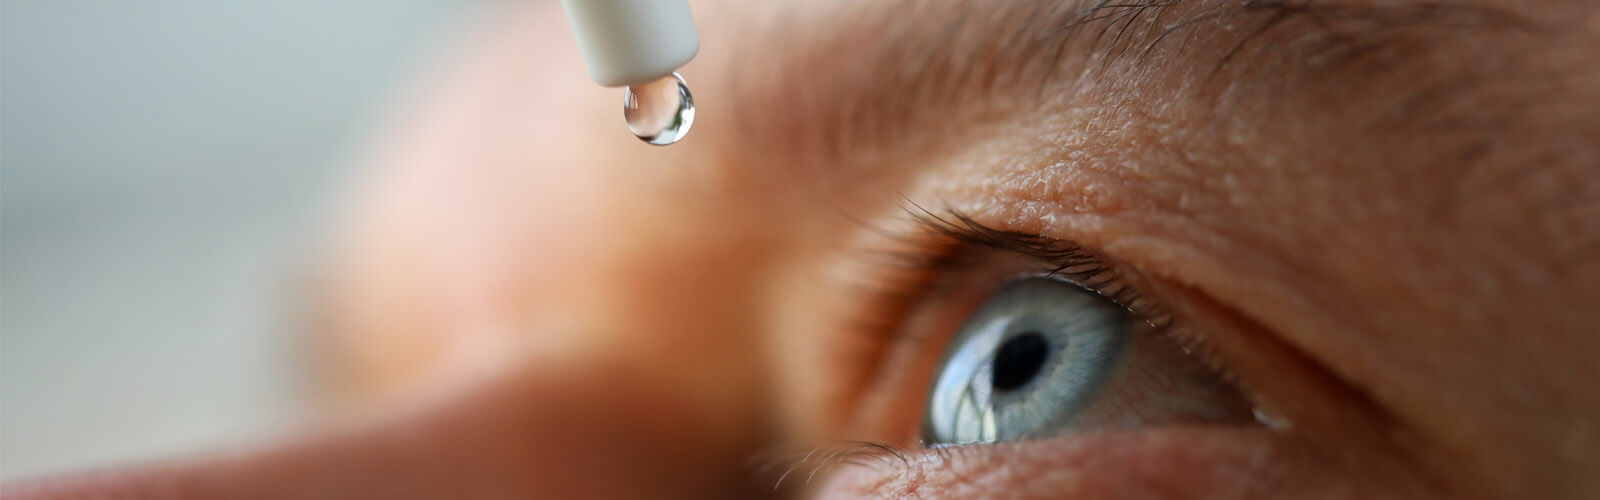 Kontaktní čočky, oční kapky a lubrikace